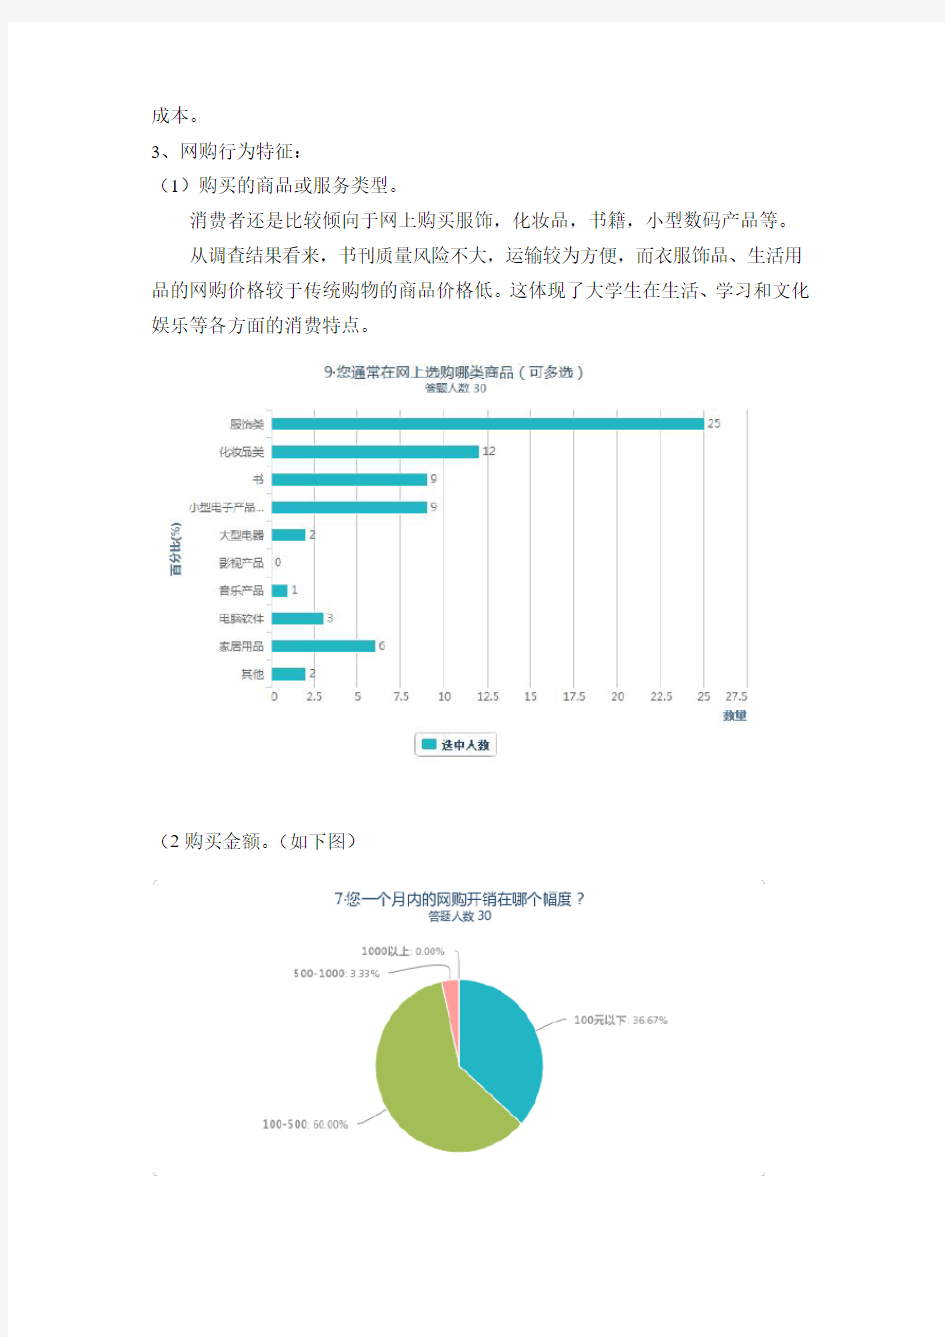 重庆工商大学 电子商务 网上购物调查报告